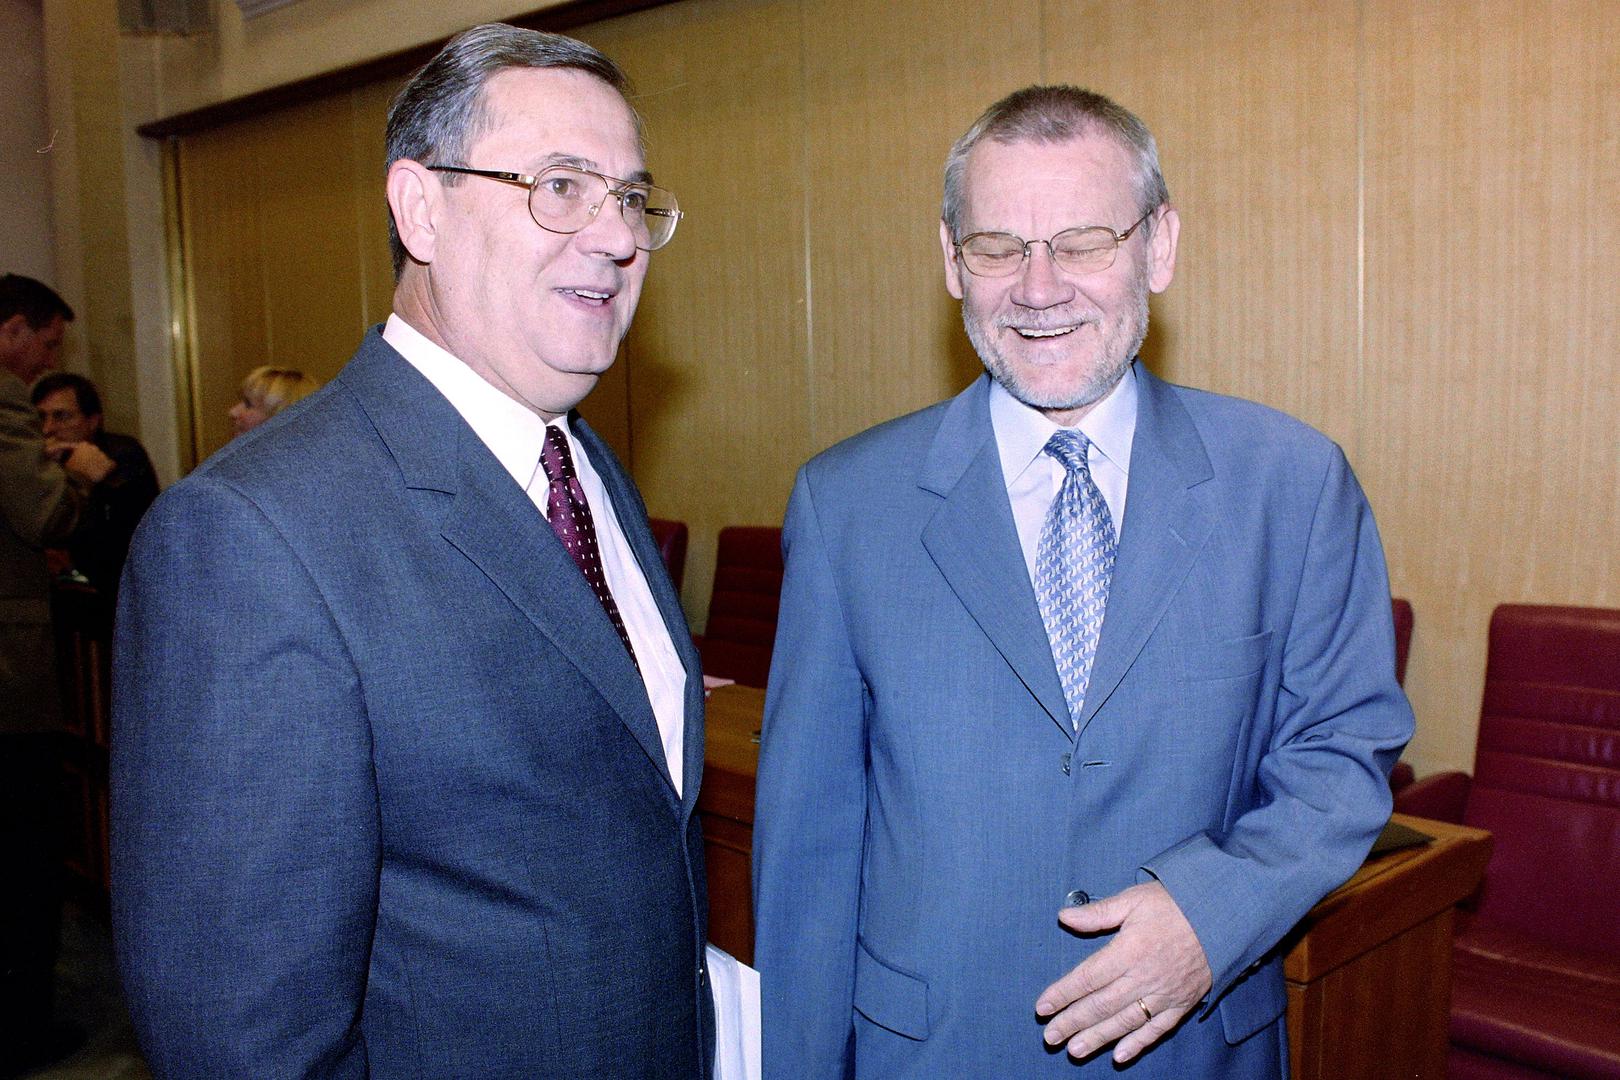 Nakon izbora 2000. godine HSS ulazi u vlast koju predvodi Račanov SDP. Na izborima osvajaju sjajnih 17 mandata, od kojih je jedan manjinac. Zlatko Tomčić postaje predsjednik Sabora.